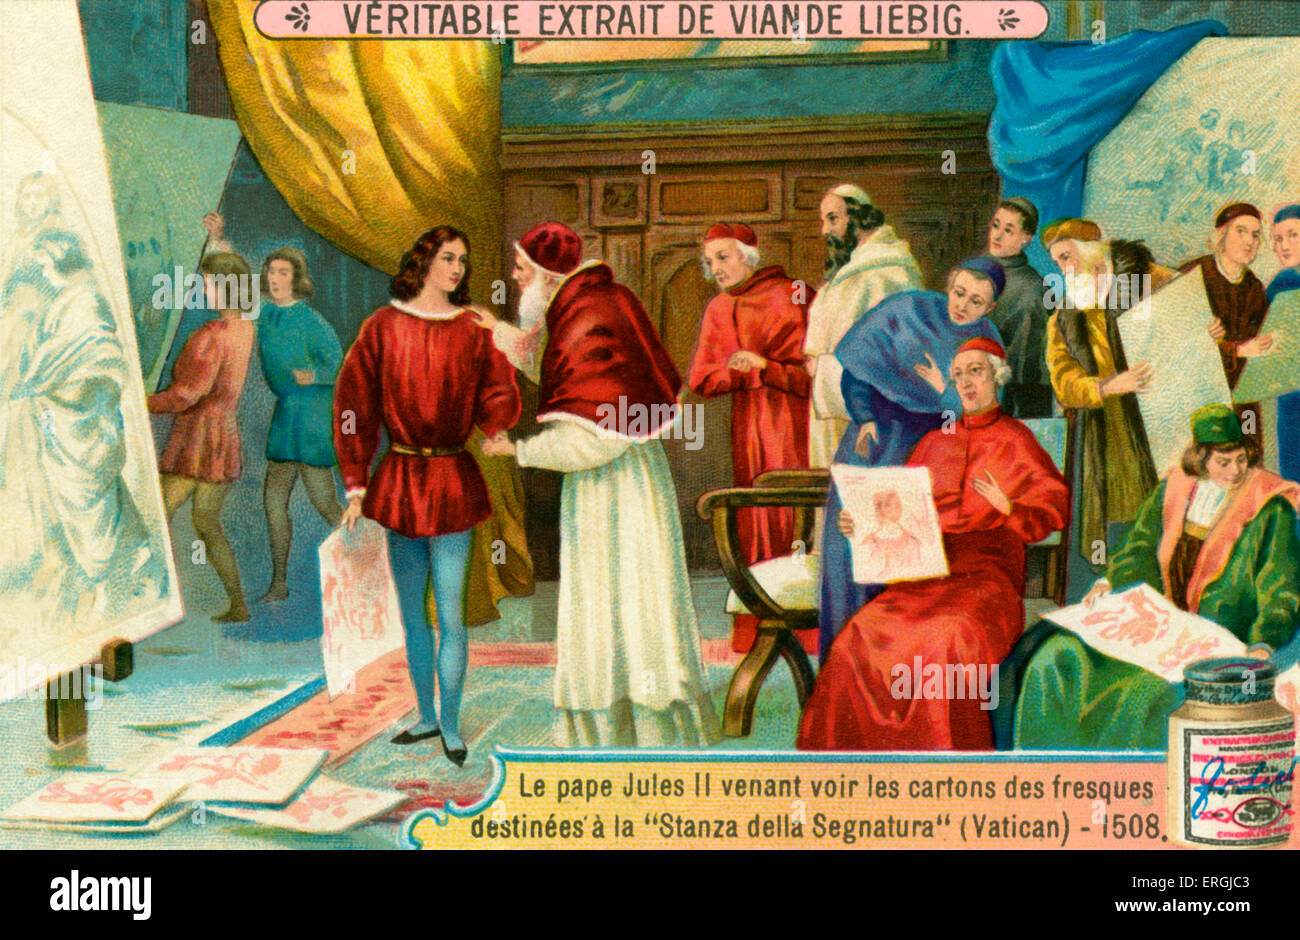 Papst Julius II Prüfung Gemälde produziert für "Stanza della Segnatura" im Palast des Vatikans, 1508. Einer von vier "Stanze di Raffaello" (Raffael) verziert mit Fresken von Raffael. Abbildung einer Episode aus dem Leben des italienischen Malers Raffael (Sanzio da Urbino) (1483 – 1520). Liebig-Karte, Anfang des 20. Jahrhunderts. Stockfoto